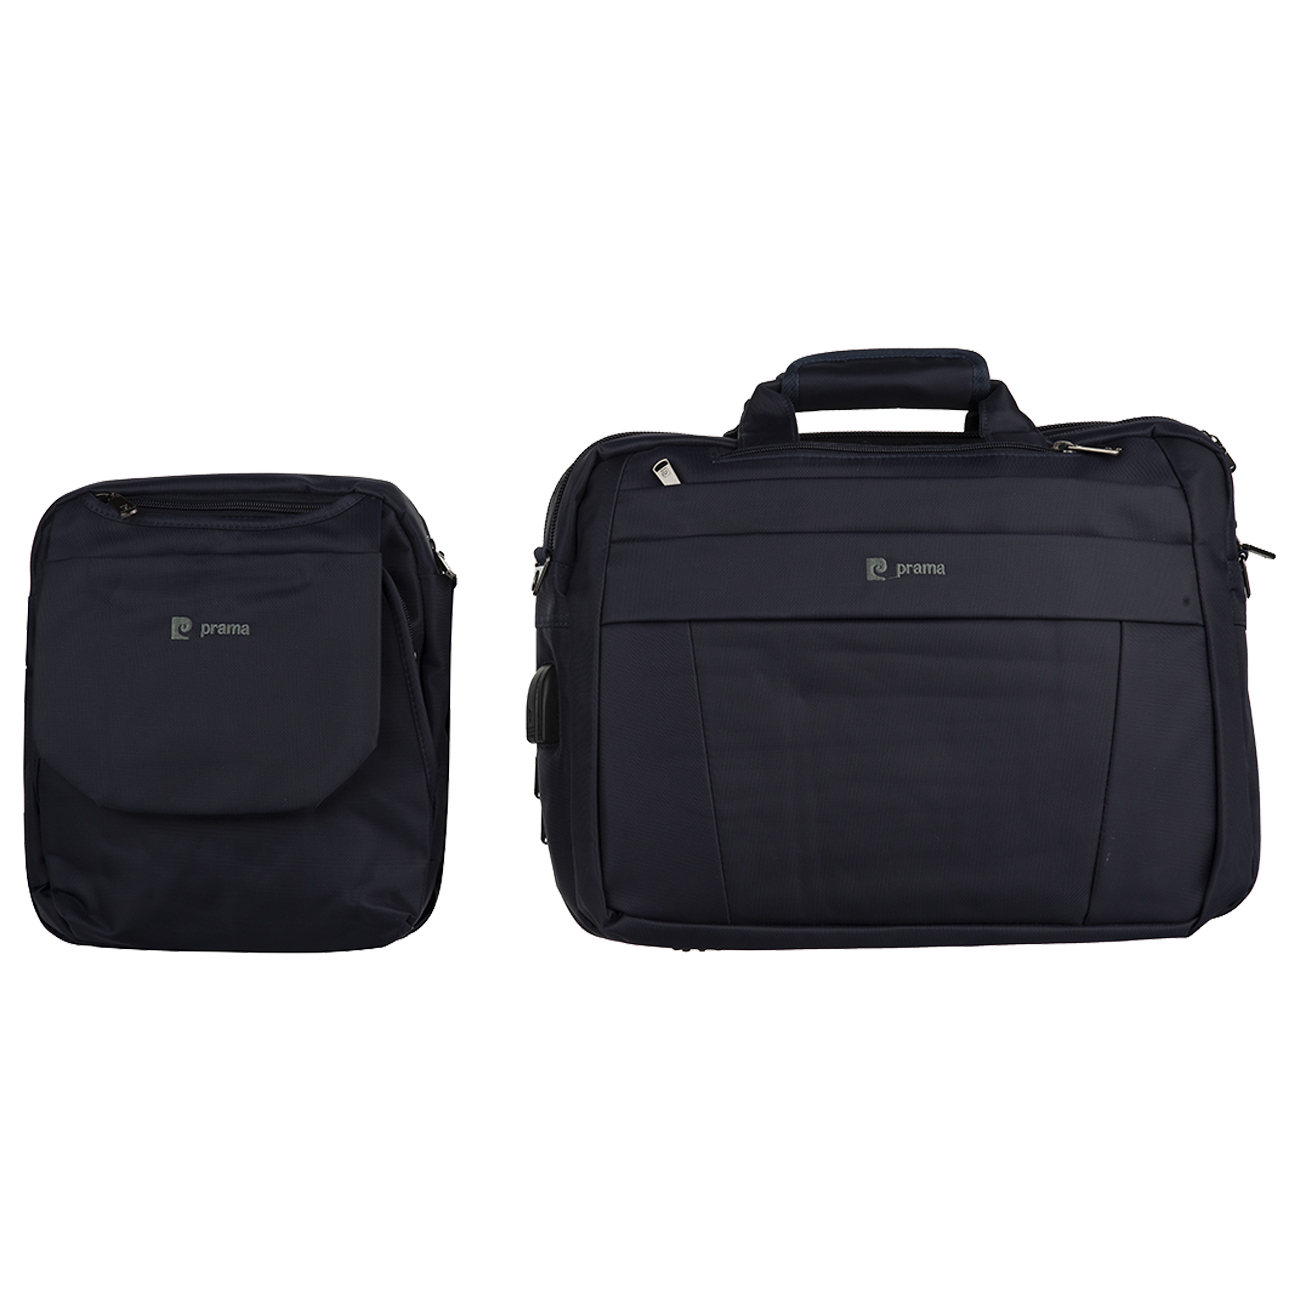 کیف لپ تاپ پراما مدل TE-390 مناسب برای لپ تاپ 15.6 اینچ به همراه کیف رودوشی